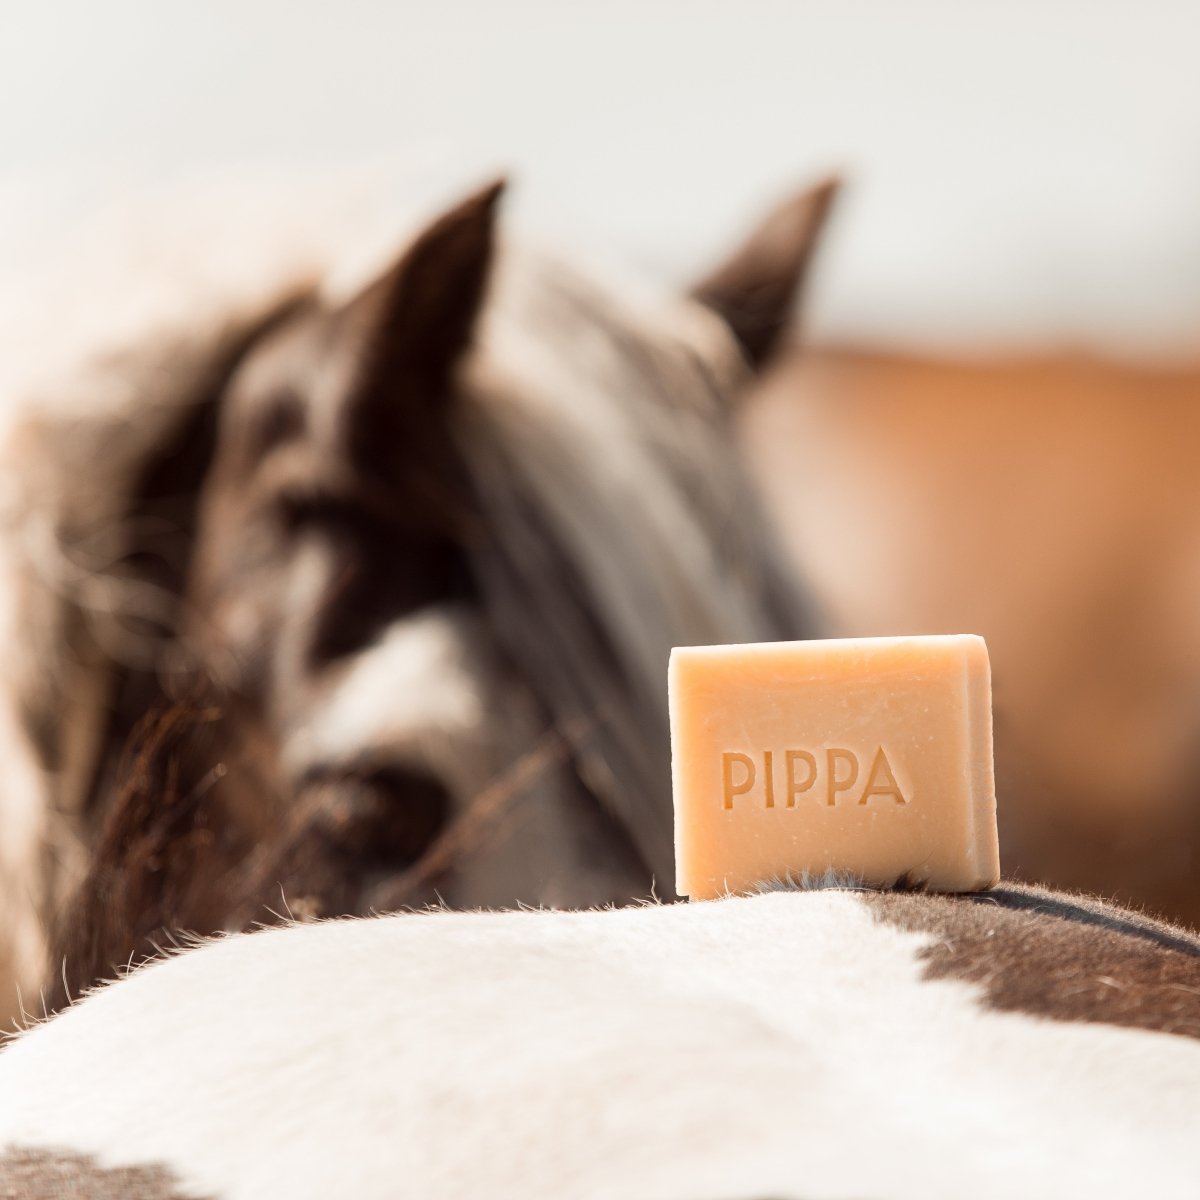 PIPPA Paardenshampoo Lemongrass & Mint - PIPPA Equestrian Soap - Shampoo en crèmespoeling voor huisdieren